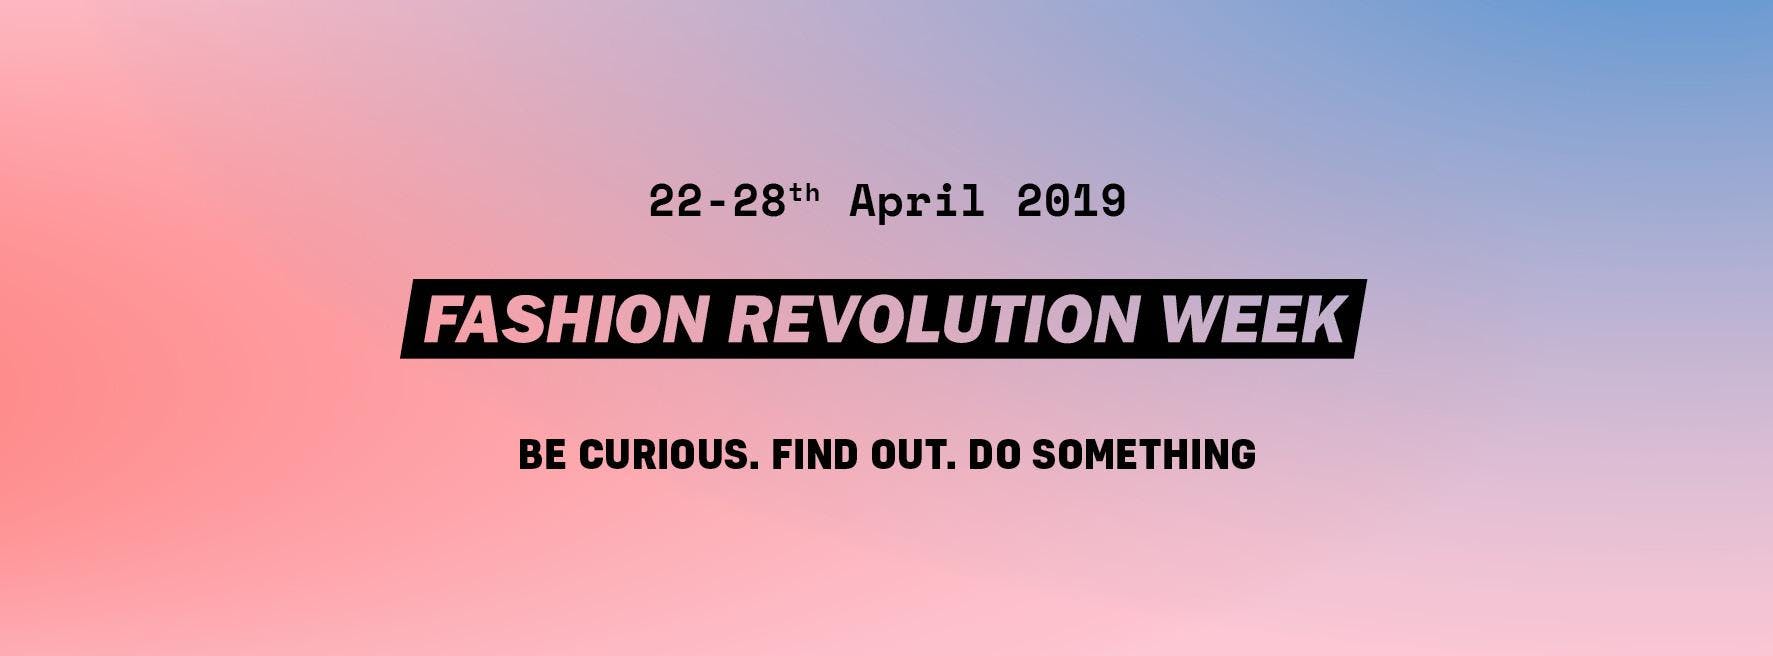 Fashion Revolution Week Bilbao: Conferencia moda sostenible